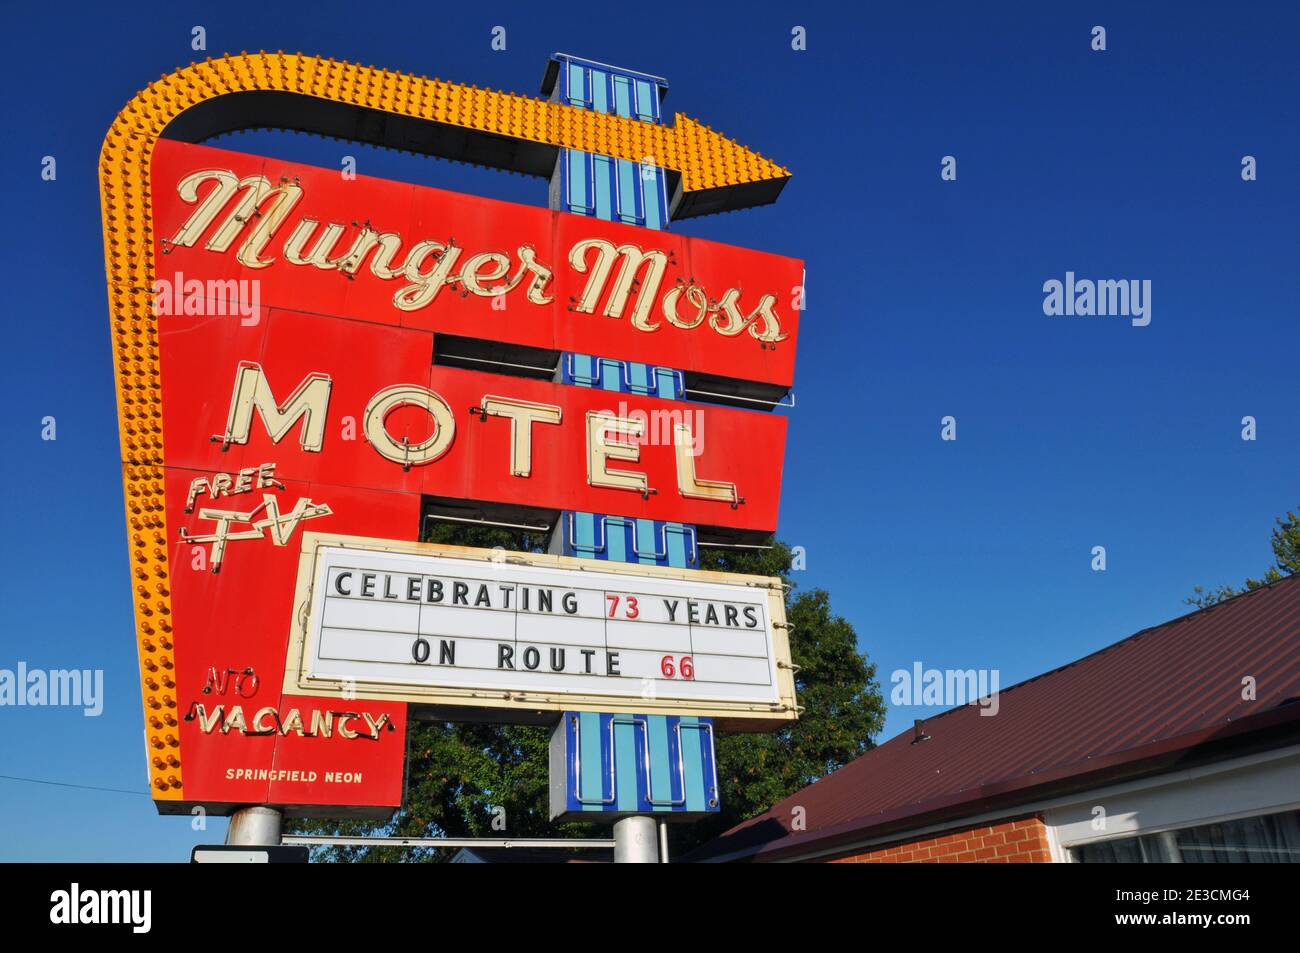 Panneau néons classique annonçant le Munger Moss Motel, un point de repère de la route 66 au Liban, Missouri depuis 1946. Banque D'Images